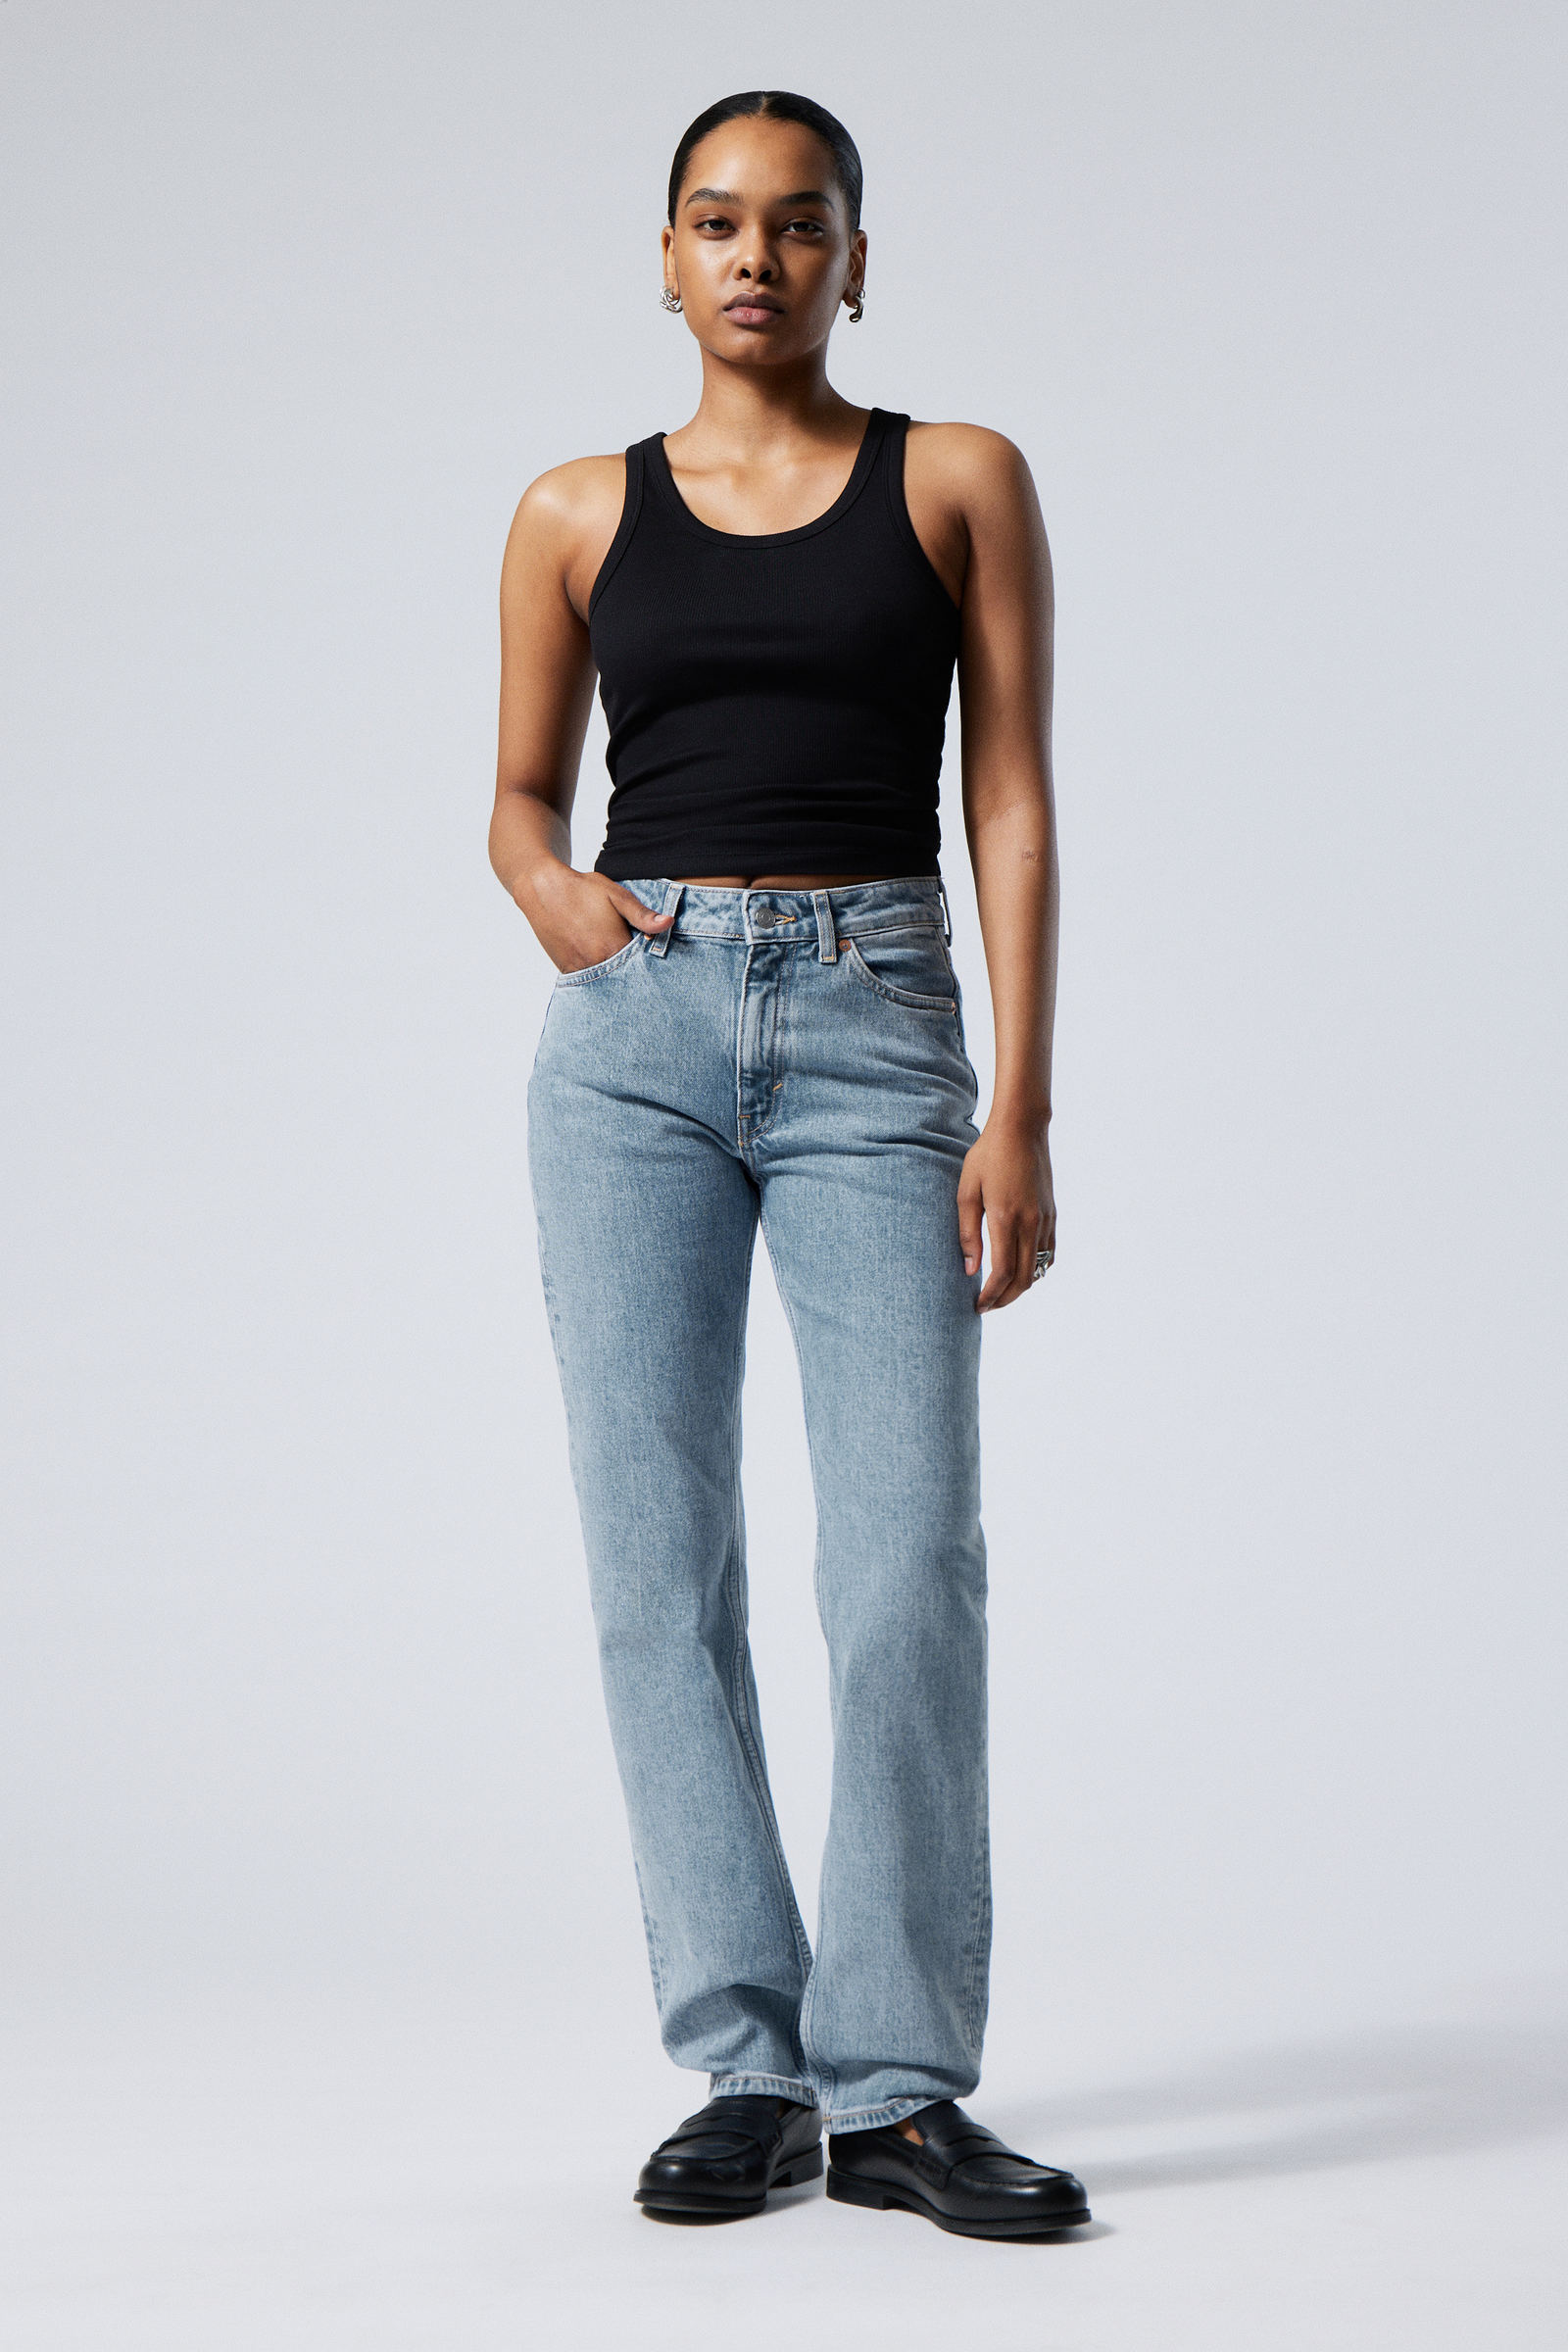 Women's Slim Fit Jeans